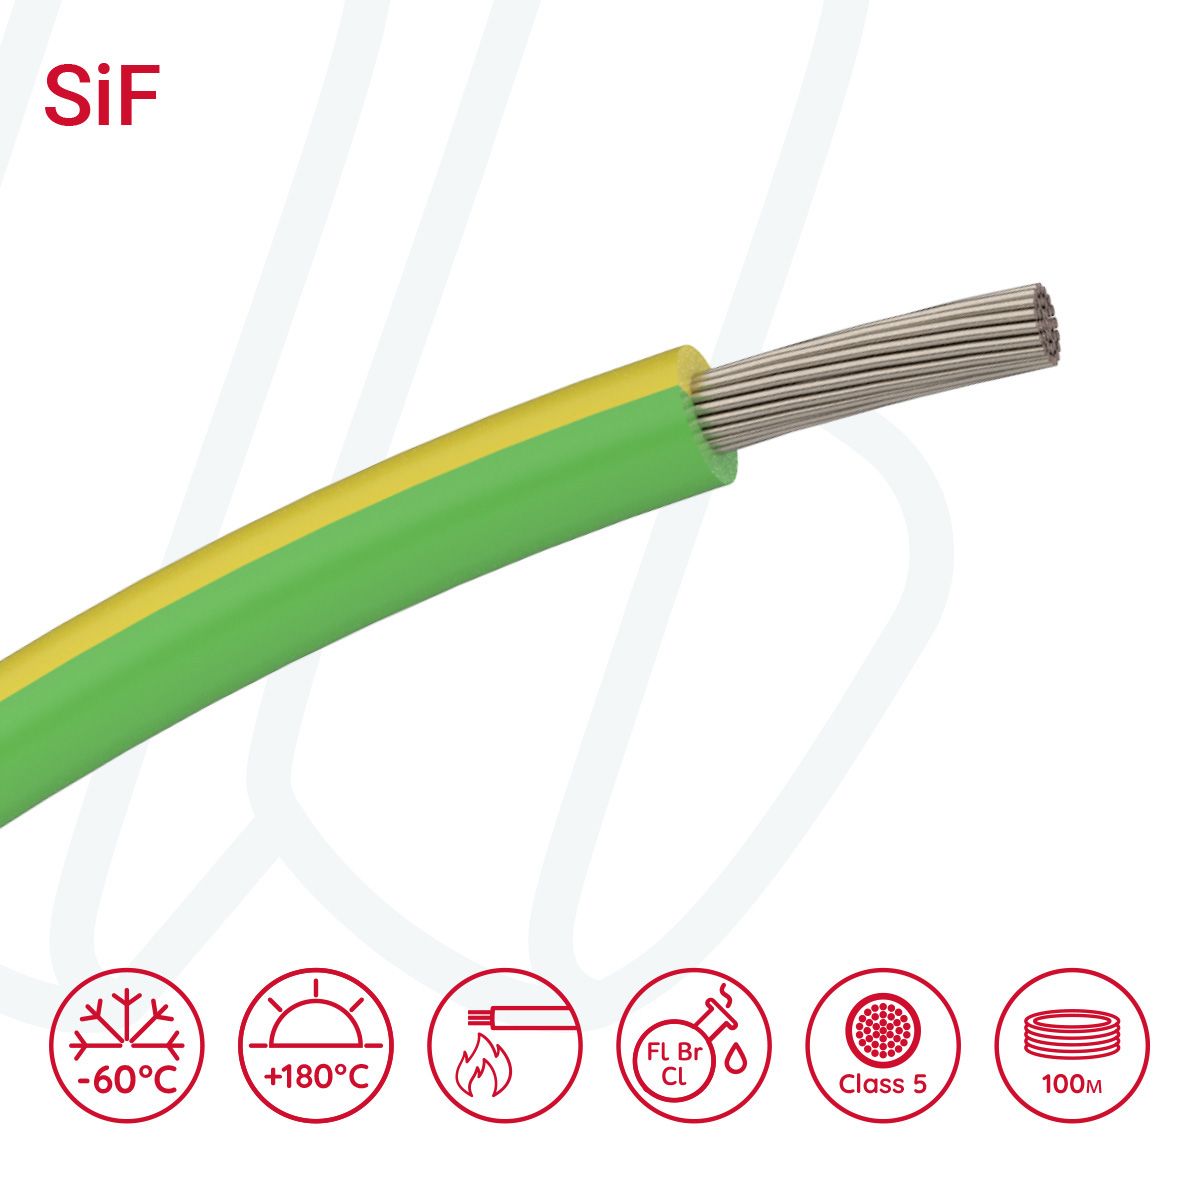 Провід термостійкий SiF 01X2.5 жовто-зелений, 01, 2.5